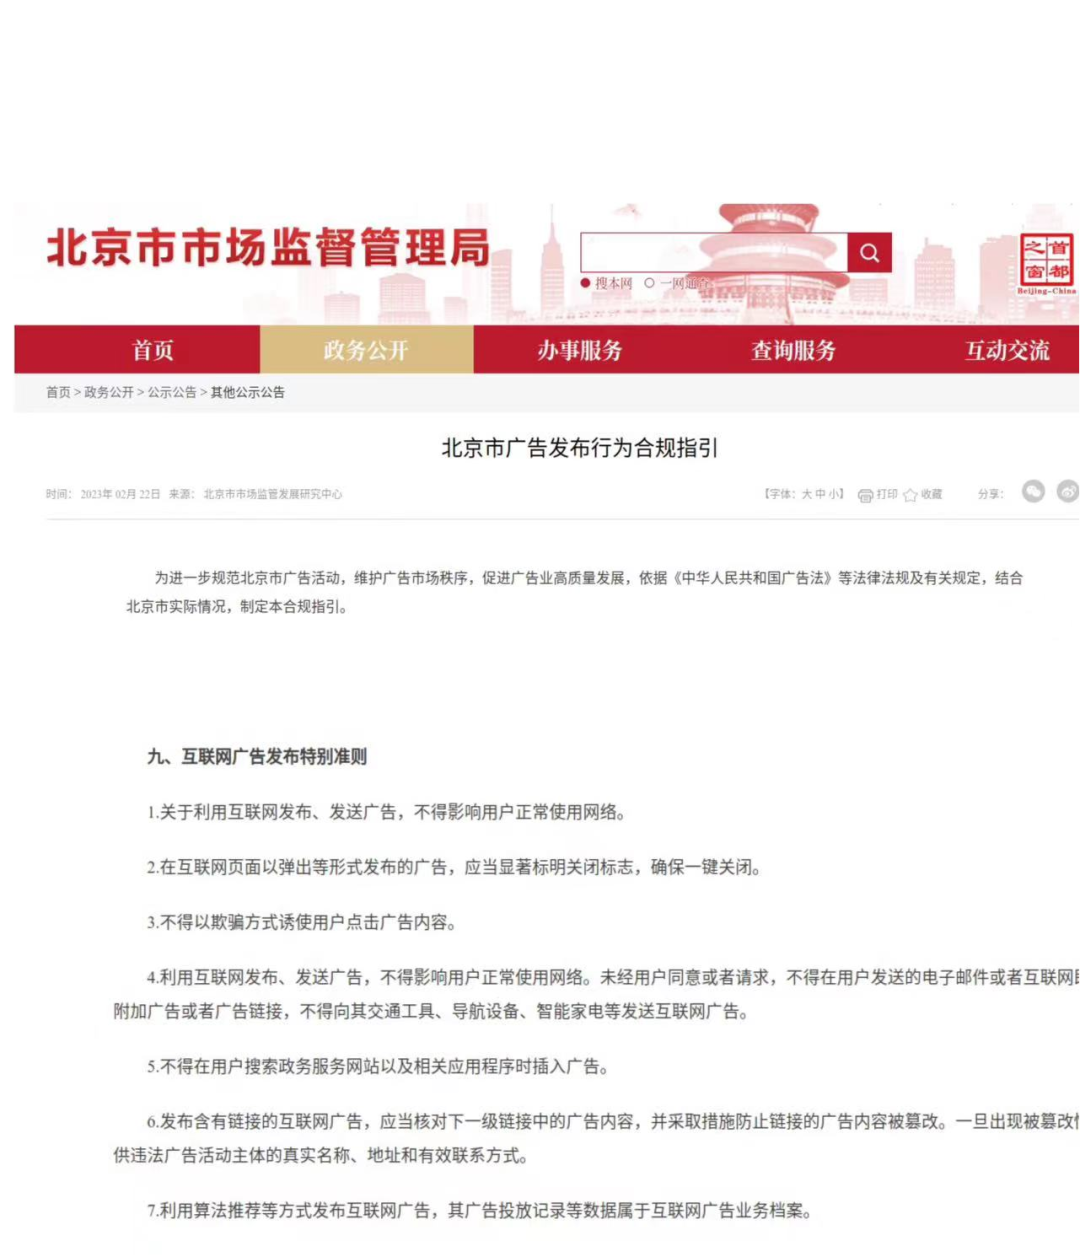 北京市制定广告发布行为合规指引